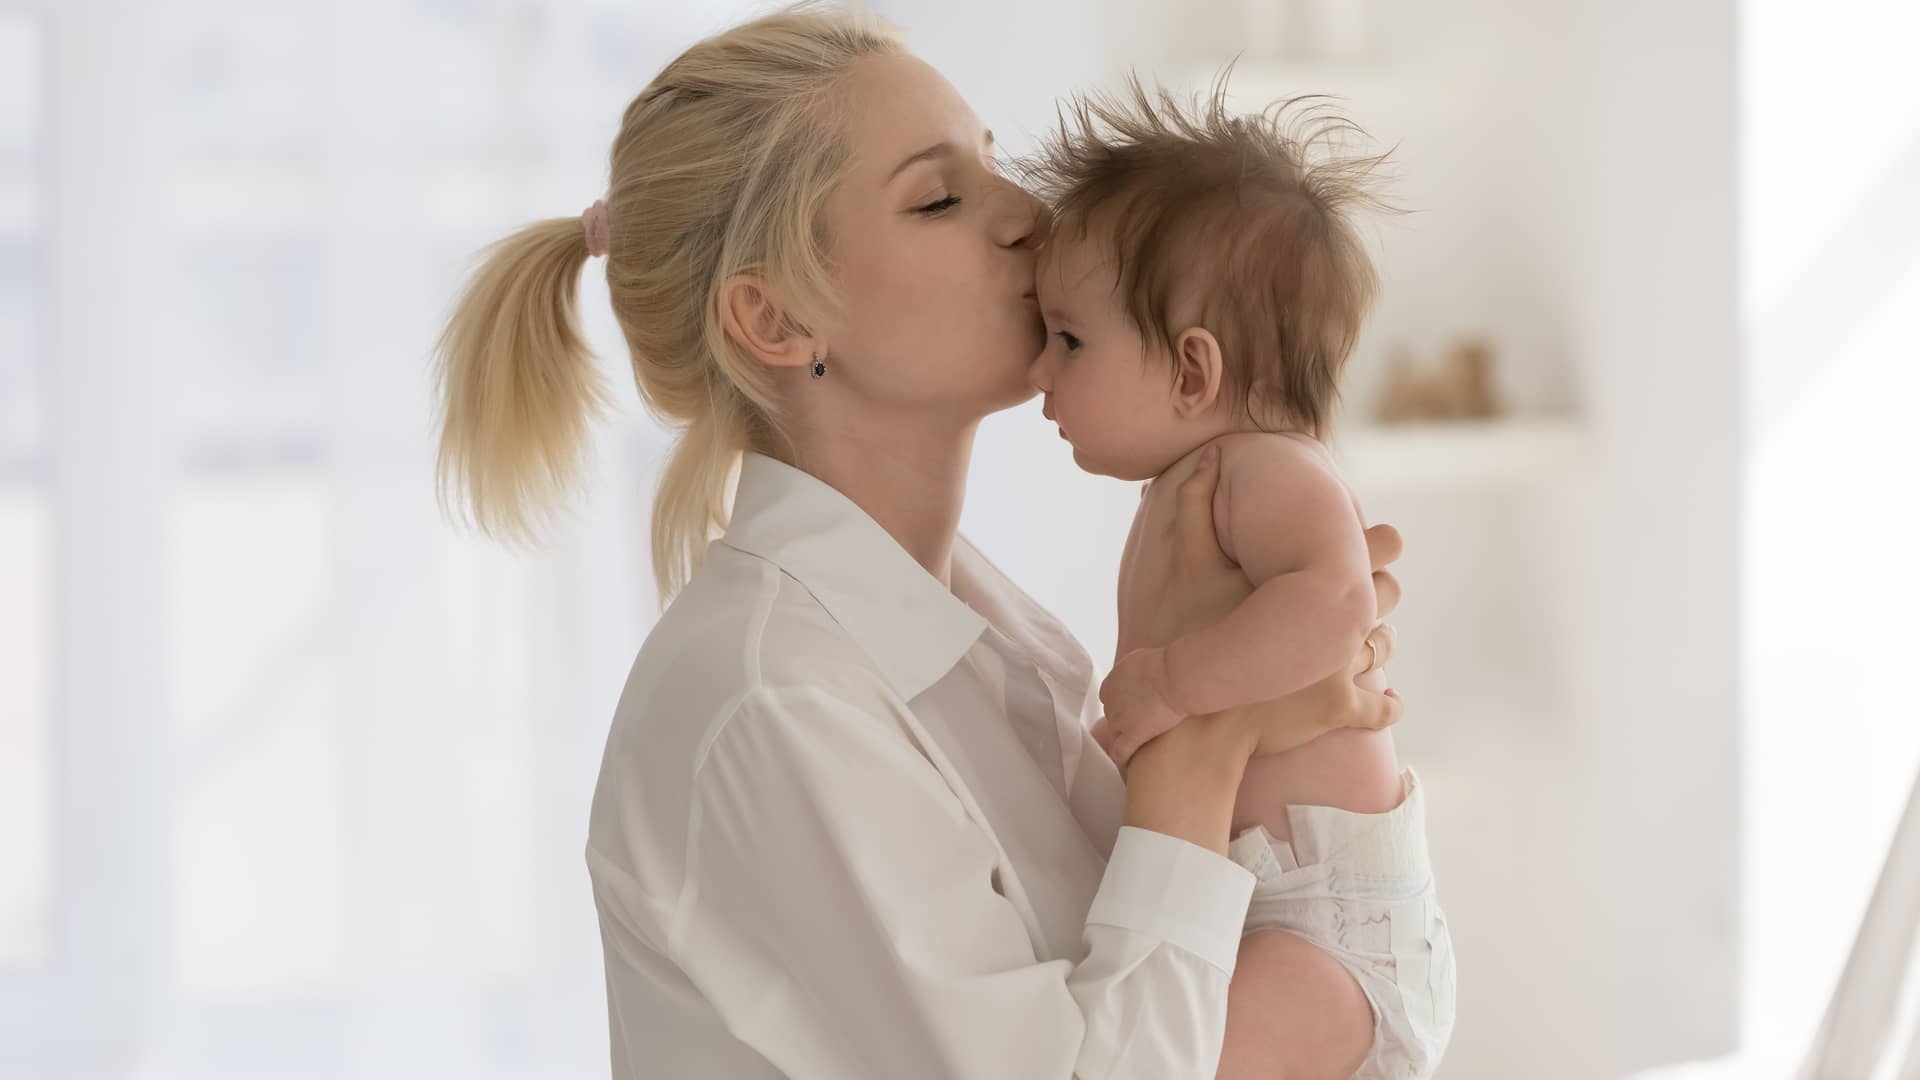 mama besando a su bebe de 8 meses en la frente despues de cambiarle el pañal